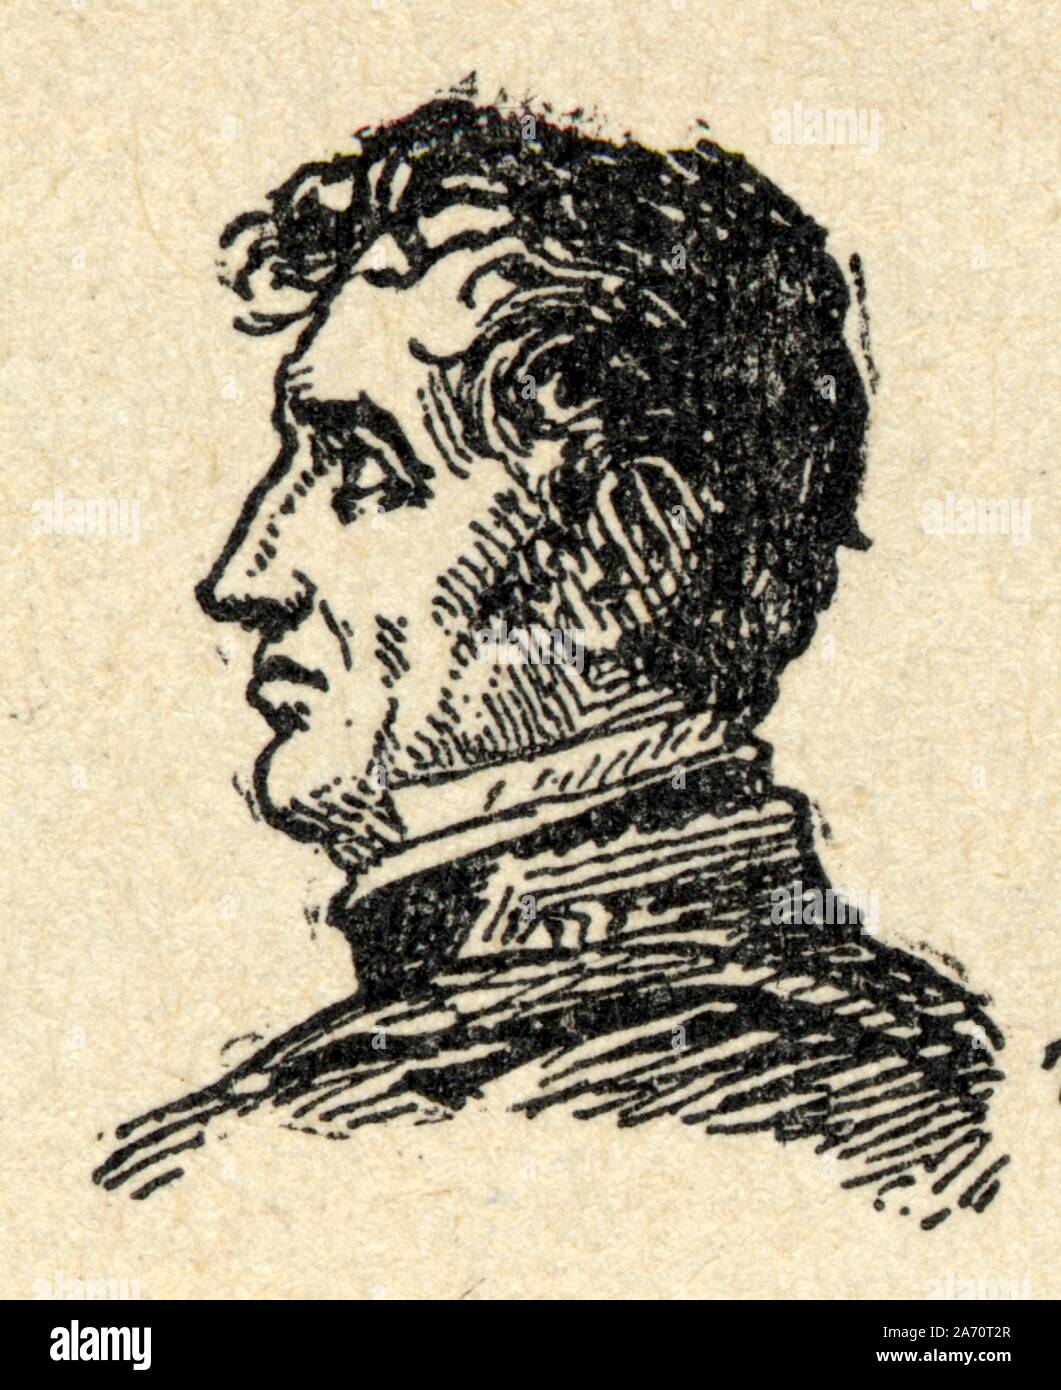 Jean-de-Dieu Soult, duc de Dalmatie, né le 29 mars 1769 à Saint-Amans-la-Bastide, aujourd'hui Saint-Amans-Soult, où il est mort le 26 novembre 1851, e Stock Photo